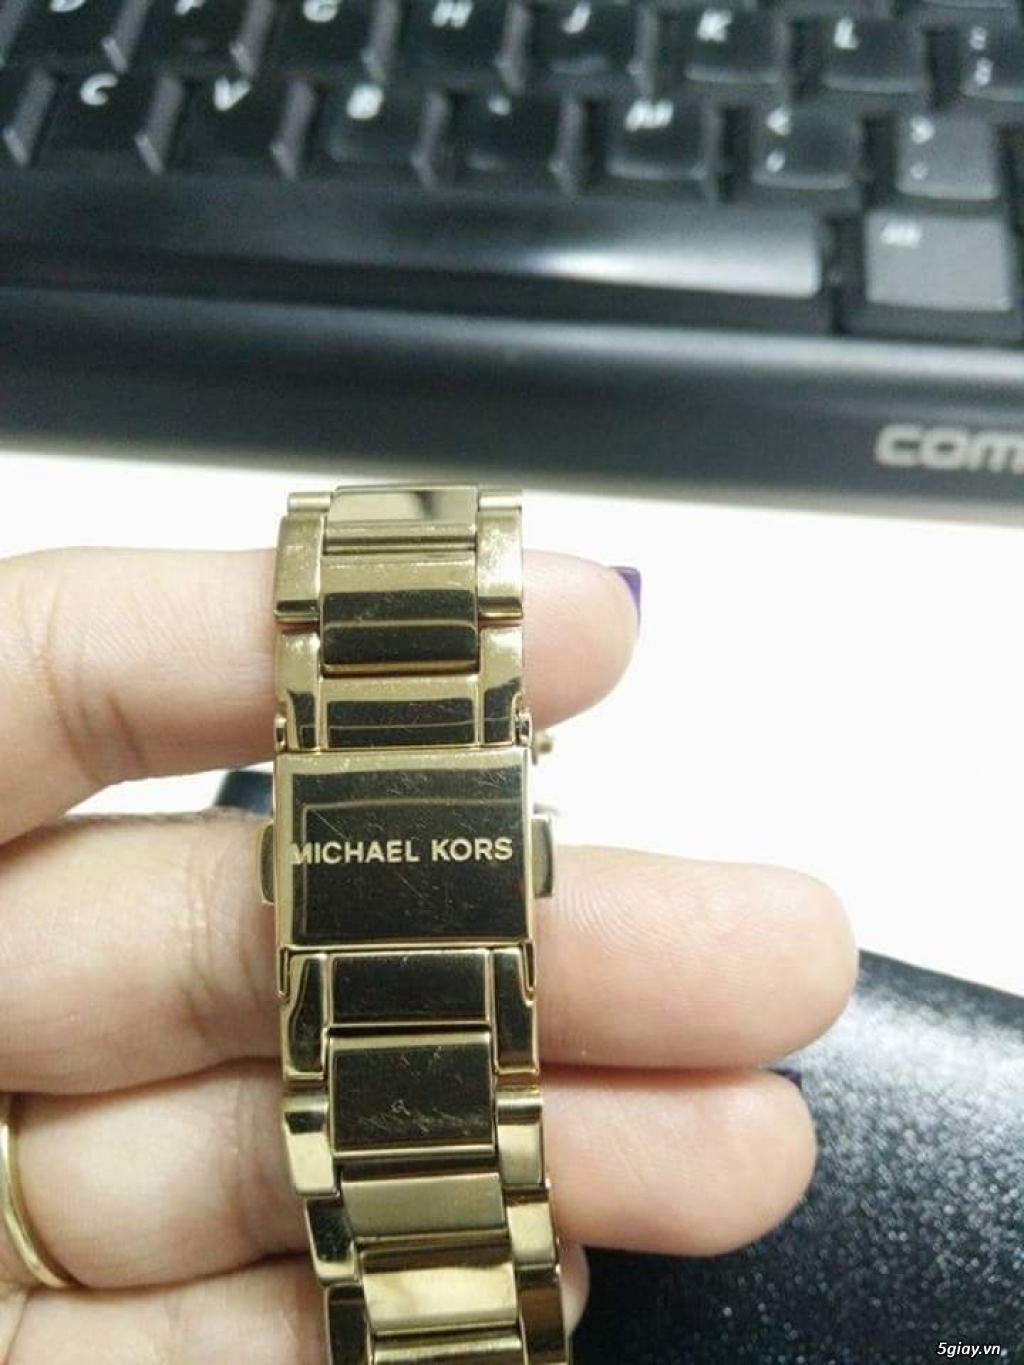 Cần bán : Đồng hồ Michael Kors M6056 - Chính hãng - Đã qua sử dụng - 1